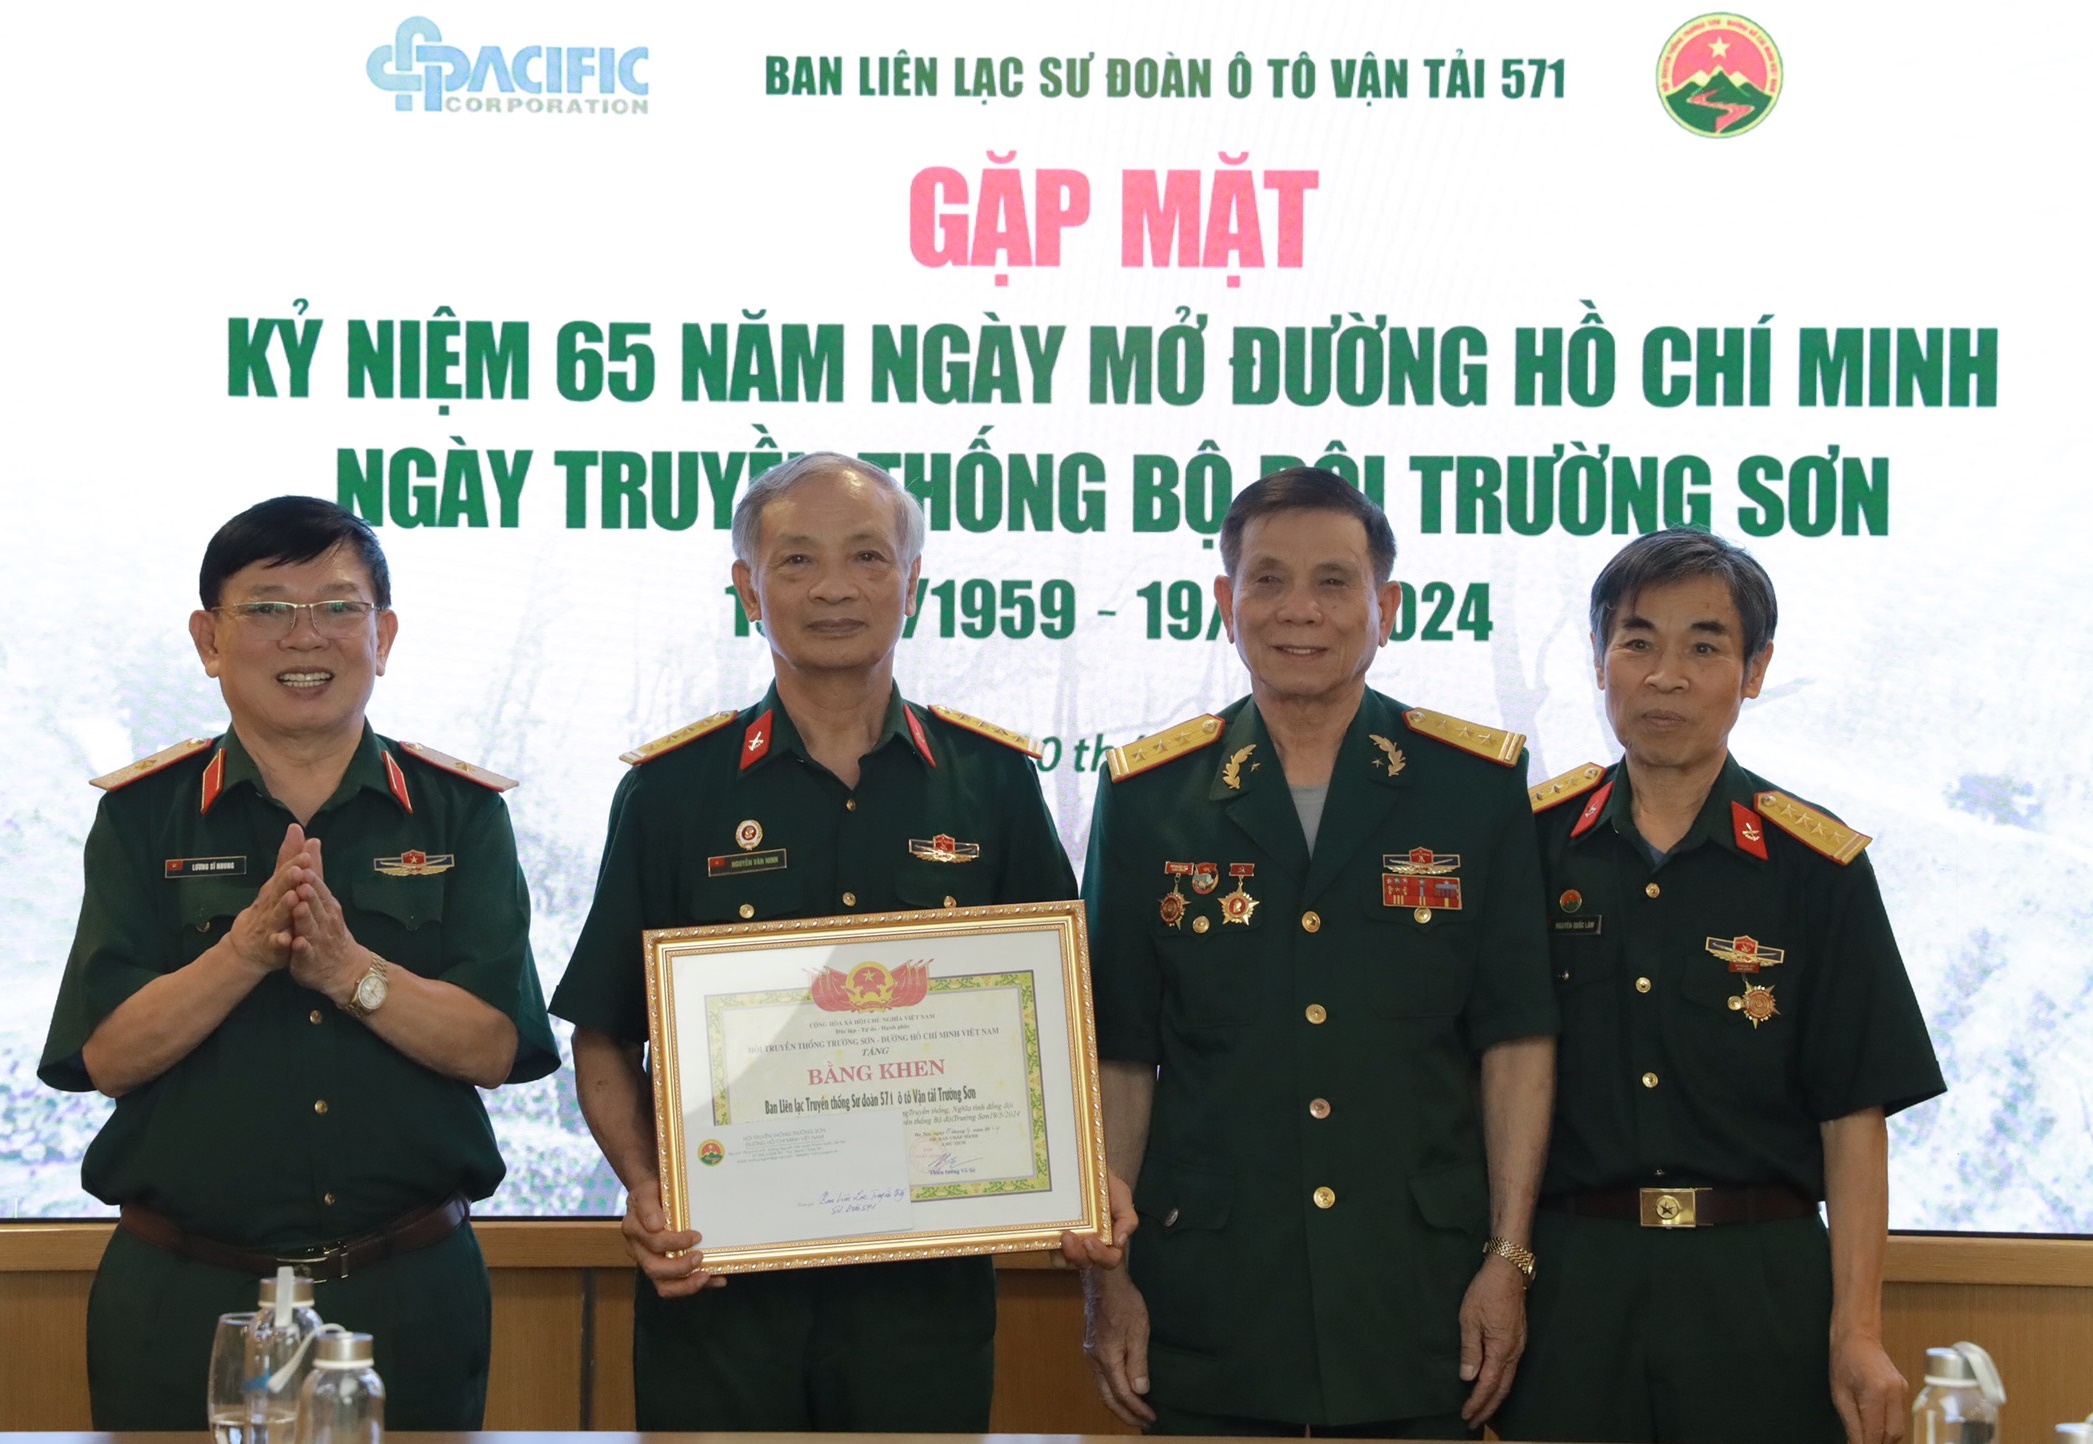 Ban liên lạc Sư đoàn 571 gặp mặt kỷ niệm 65 năm Ngày truyền thống Bộ đội Trường Sơn